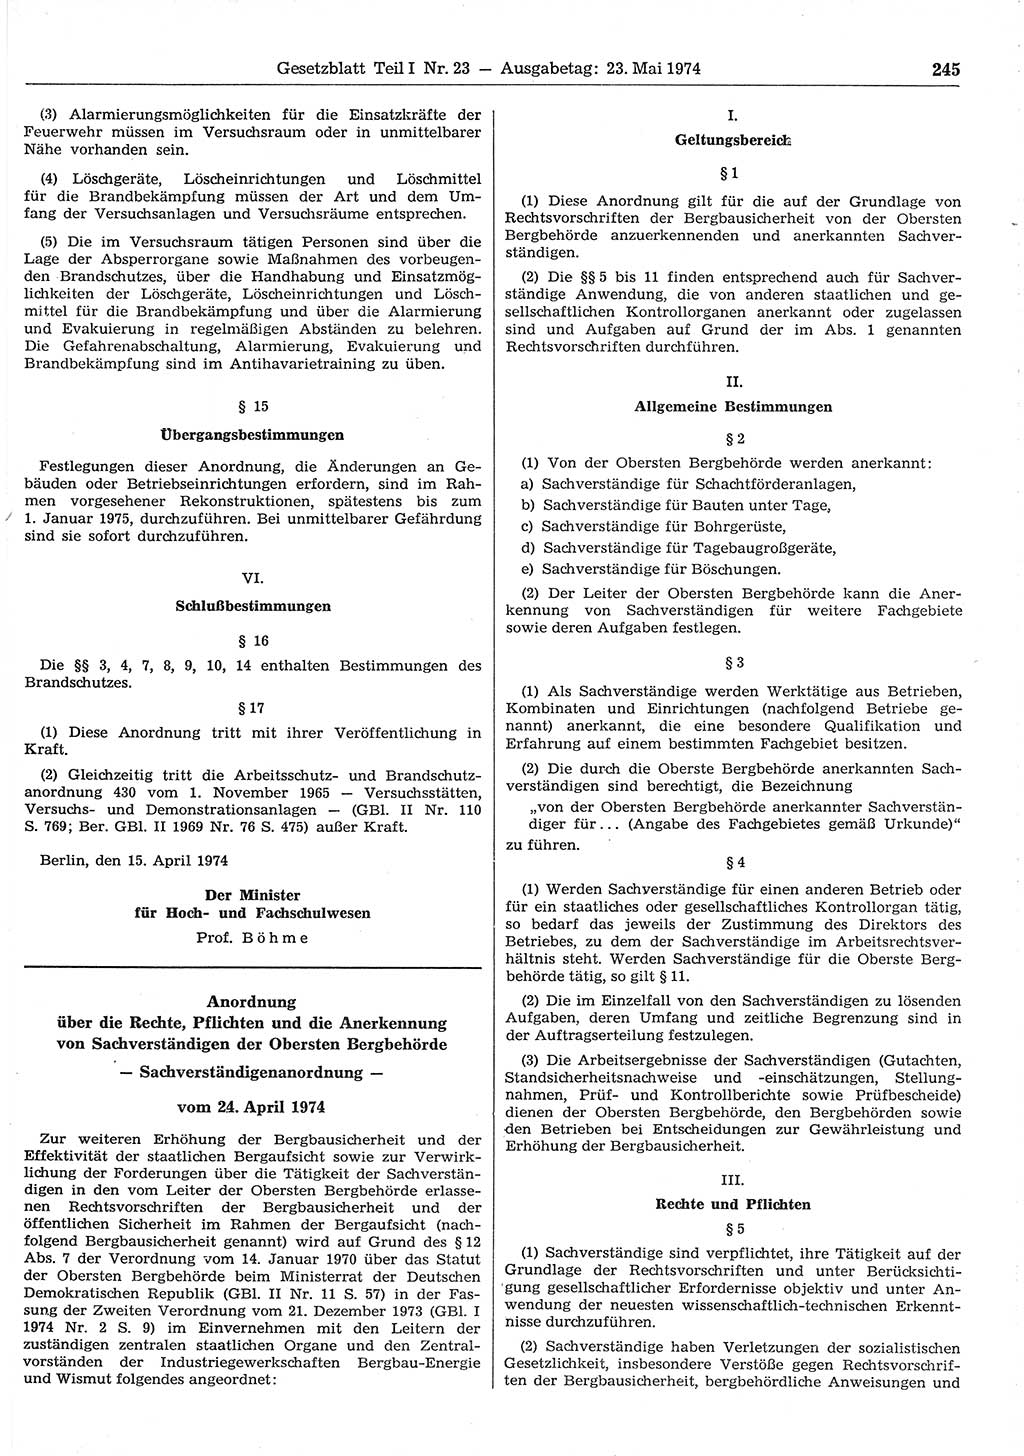 Gesetzblatt (GBl.) der Deutschen Demokratischen Republik (DDR) Teil Ⅰ 1974, Seite 245 (GBl. DDR Ⅰ 1974, S. 245)